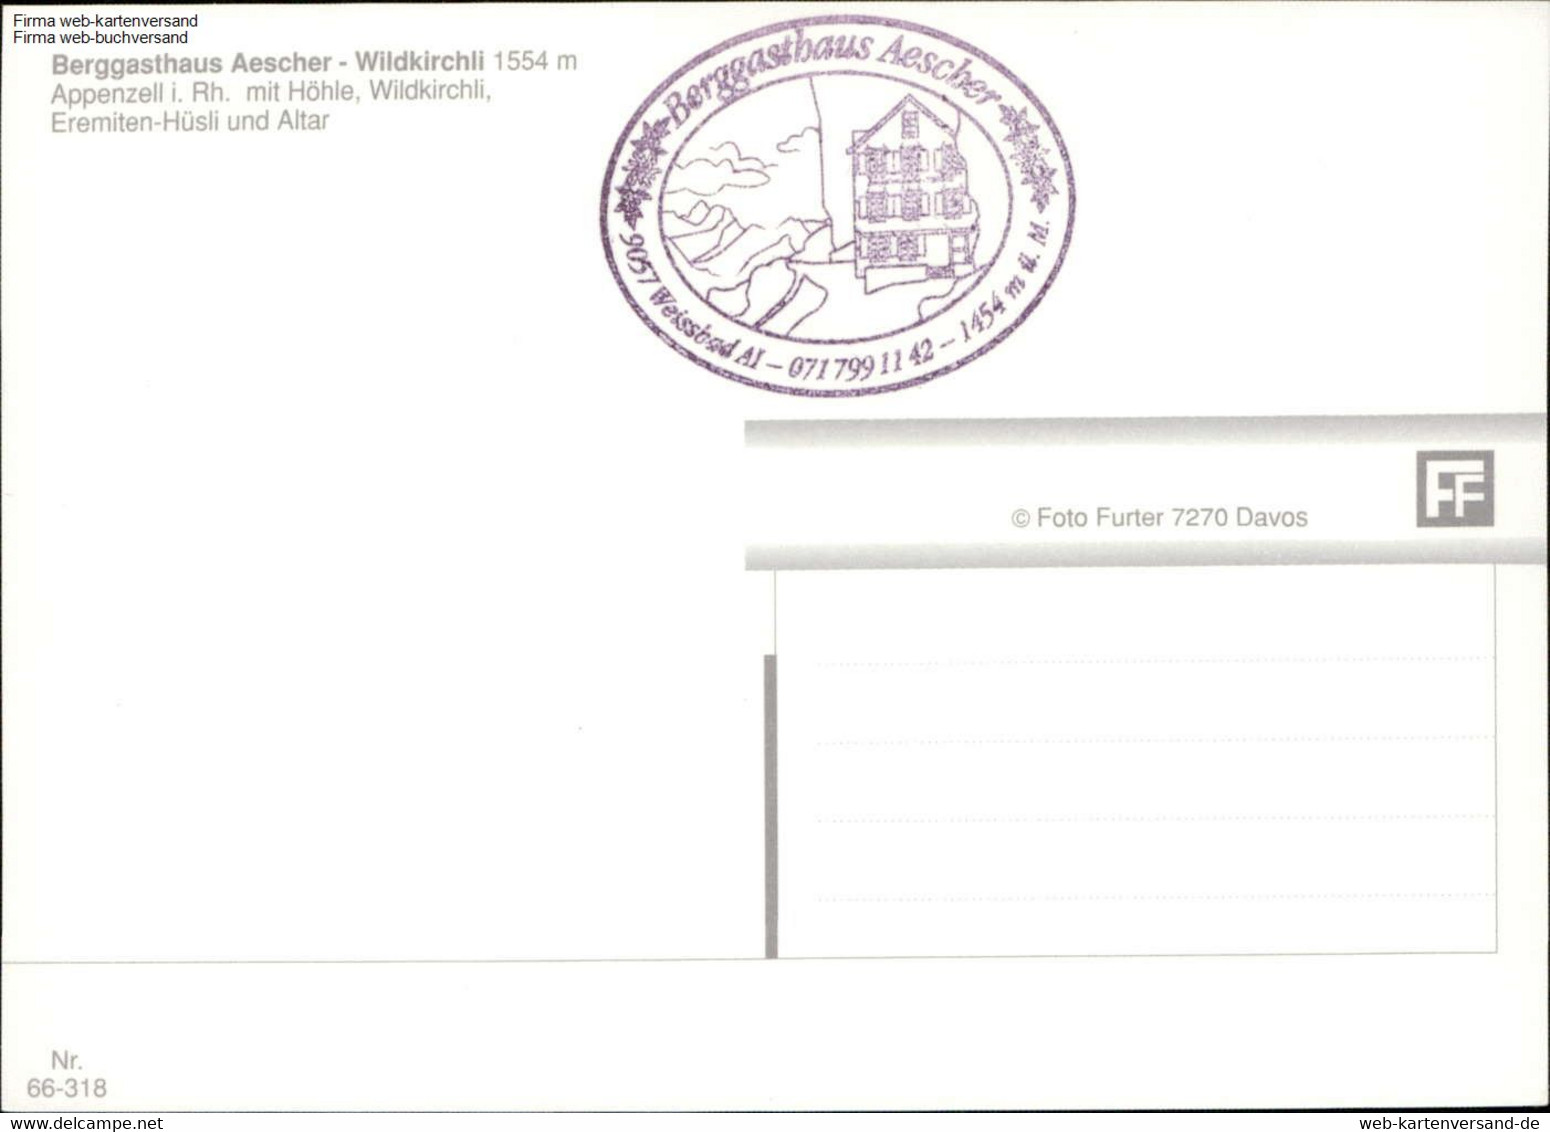 1106811  Aescher - Wildkirchli Mehrbildkarte - Aesch